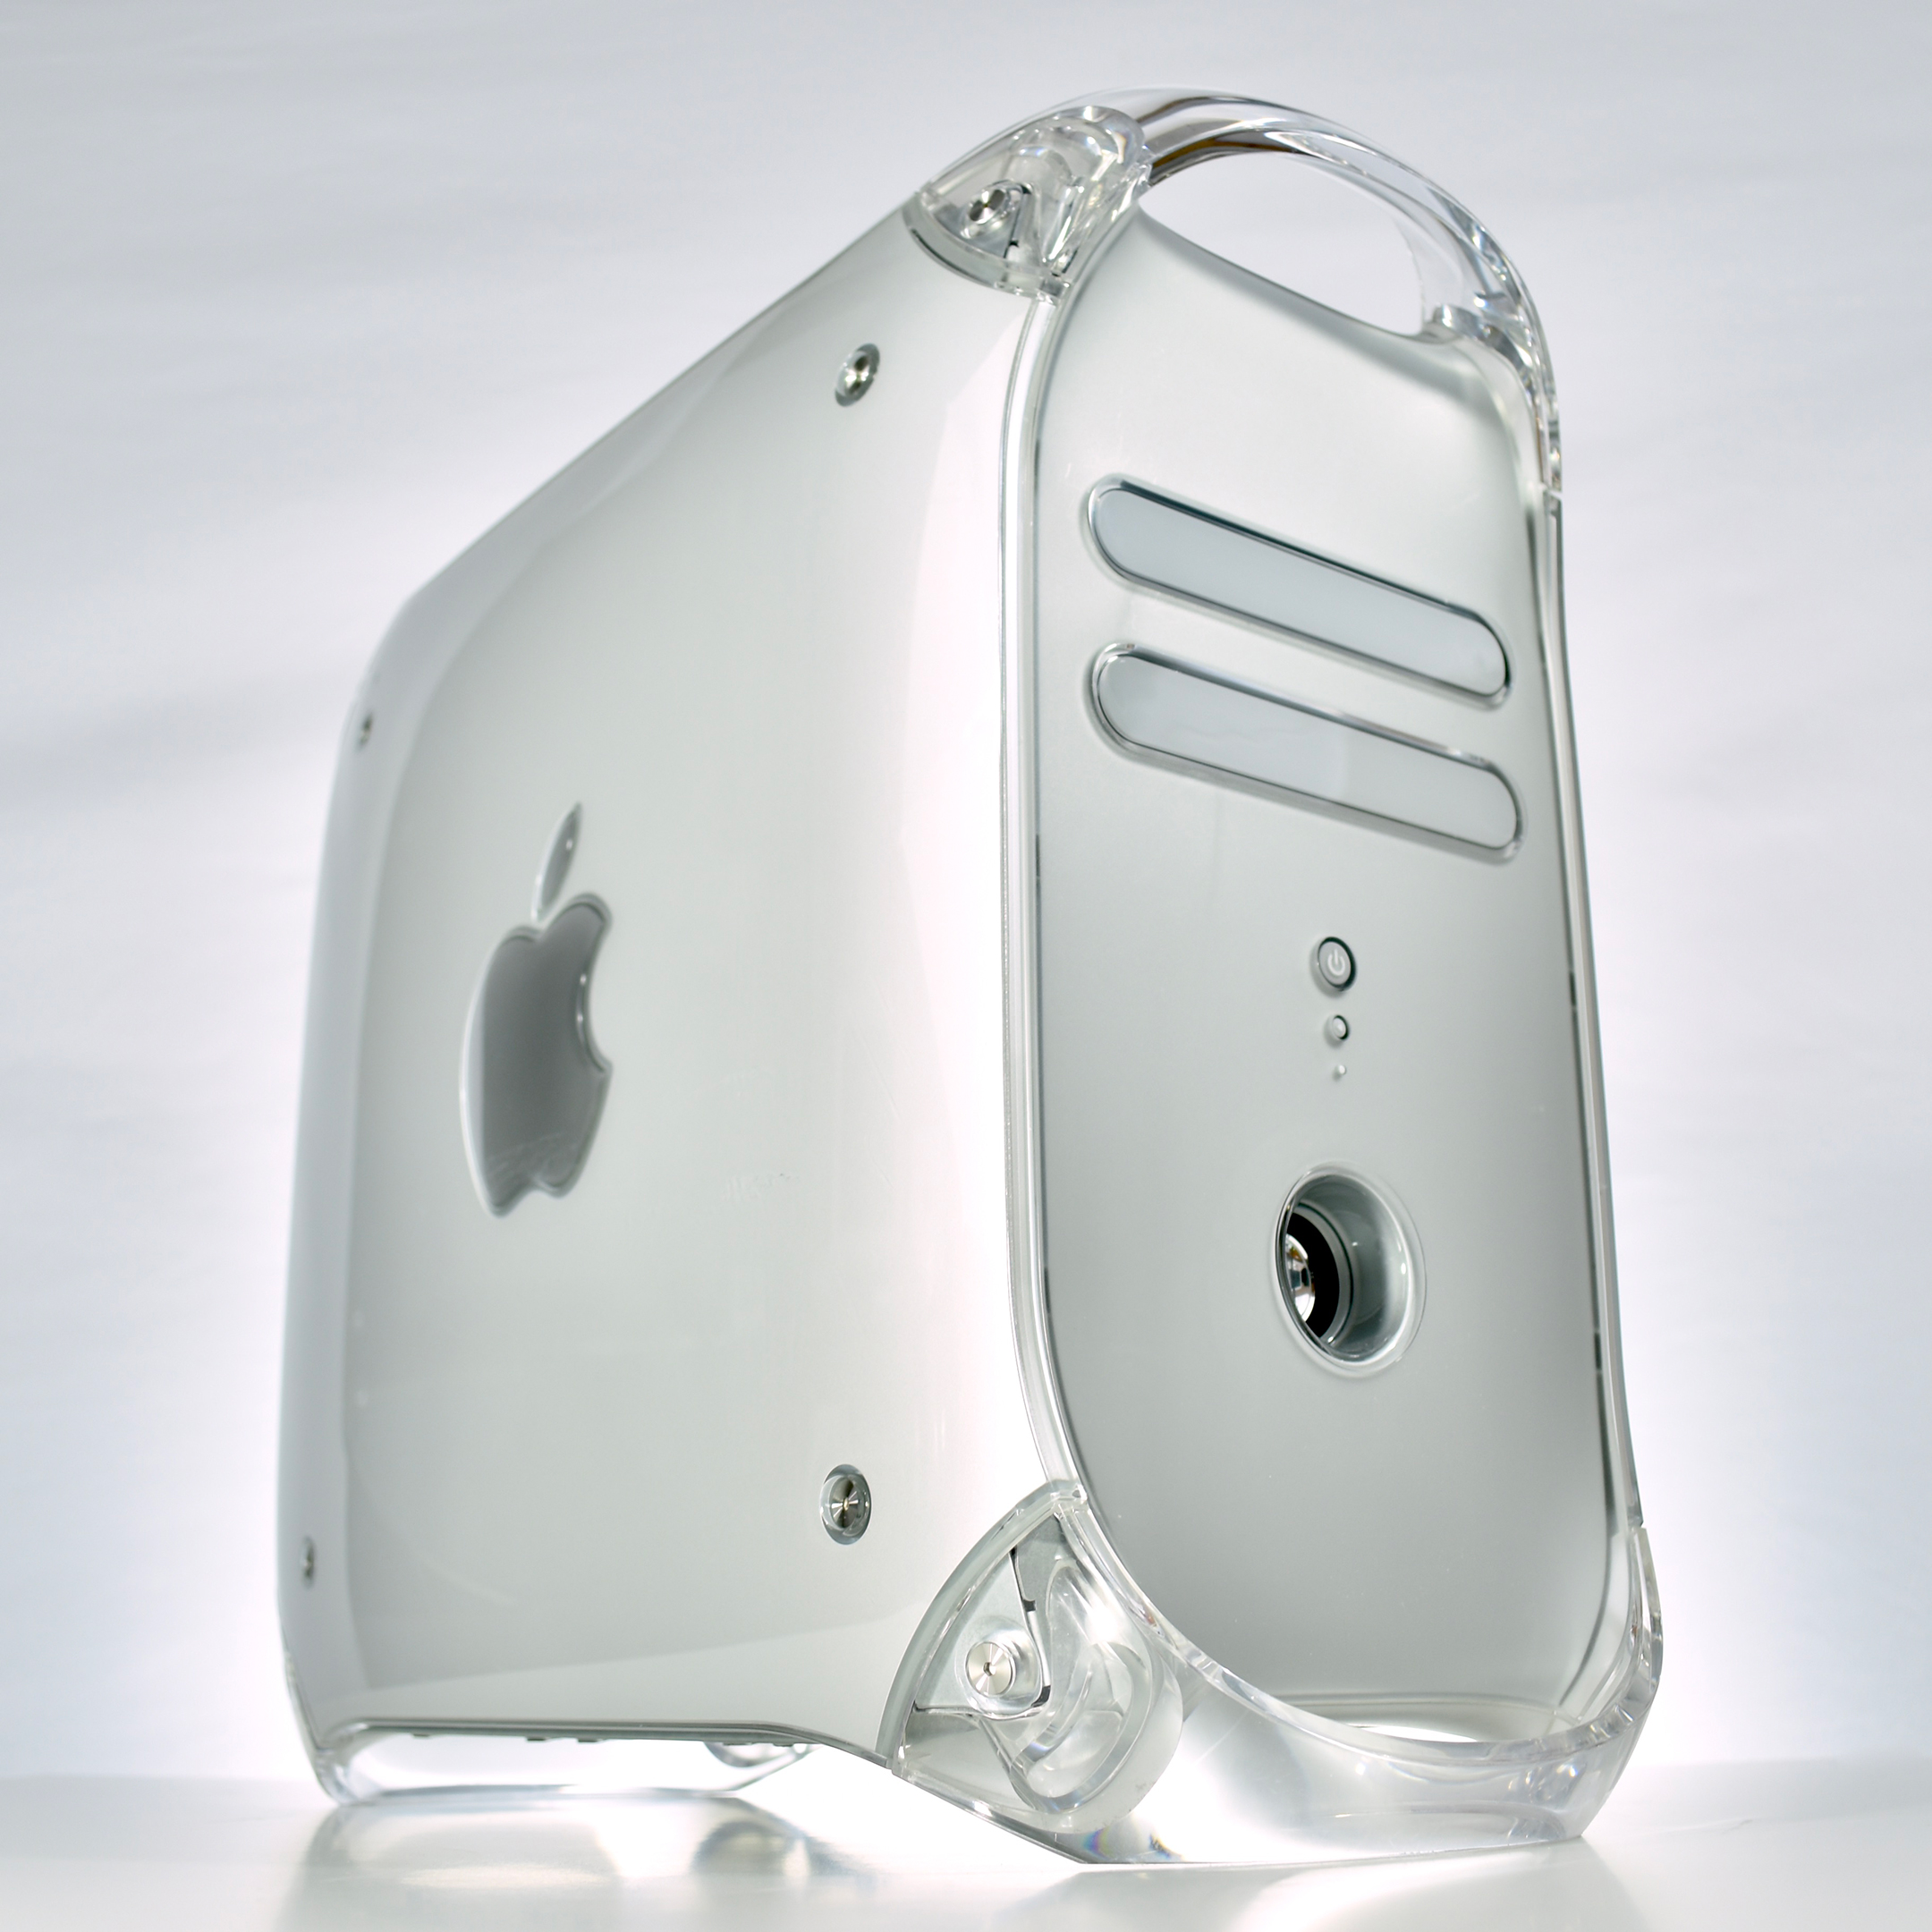 Power Mac G4 (1.0 GHz, “Quicksilver,” 2002) – mattjfuller.com